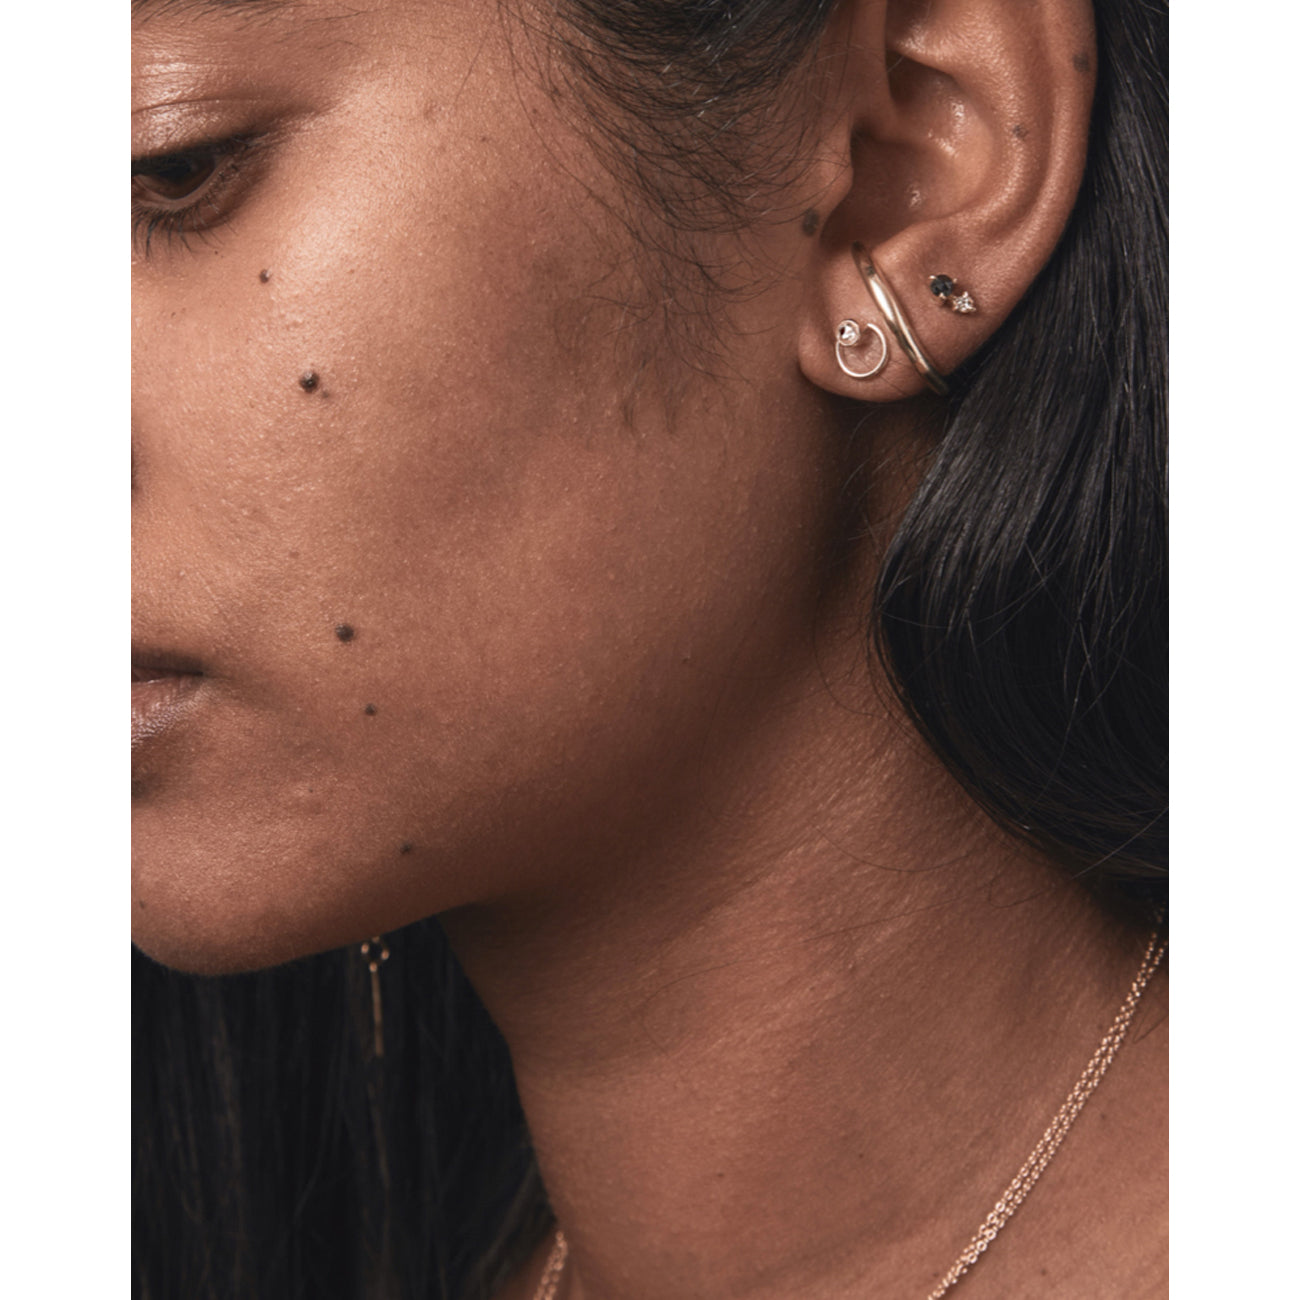 sofia earring